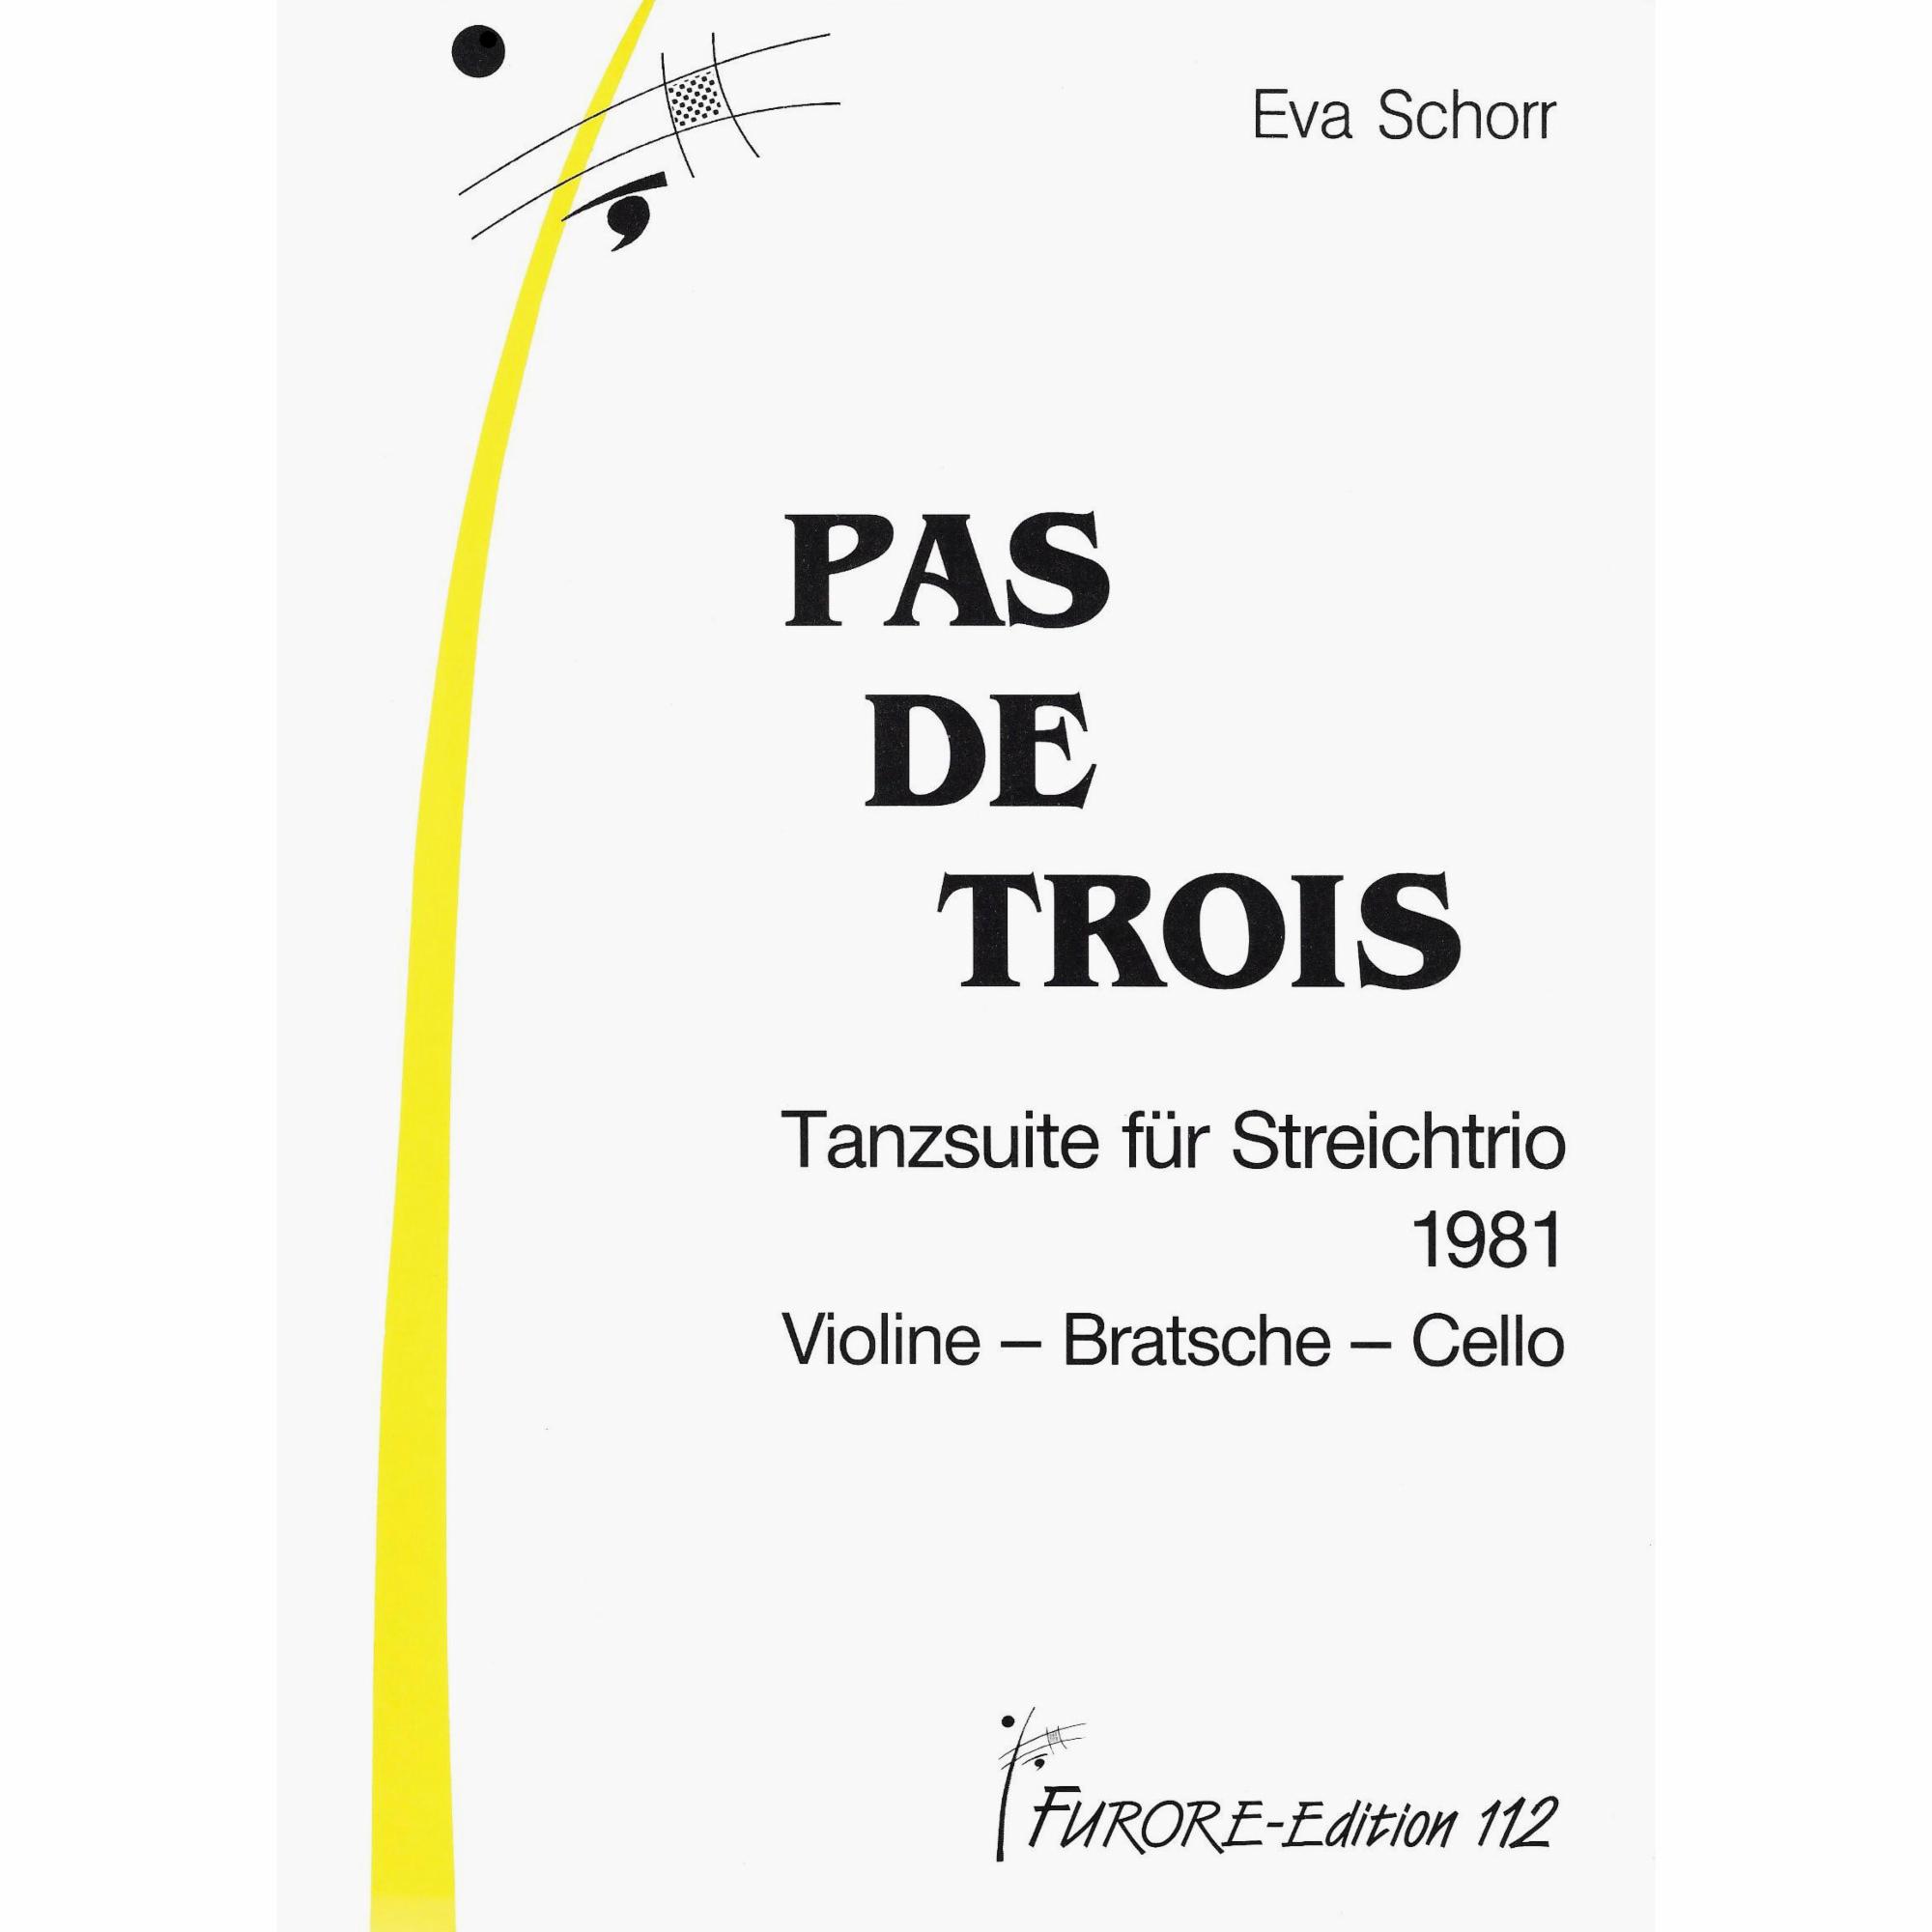 Schorr -- Pas de Trois: Dance Suite for Violin, Viola, and Cello